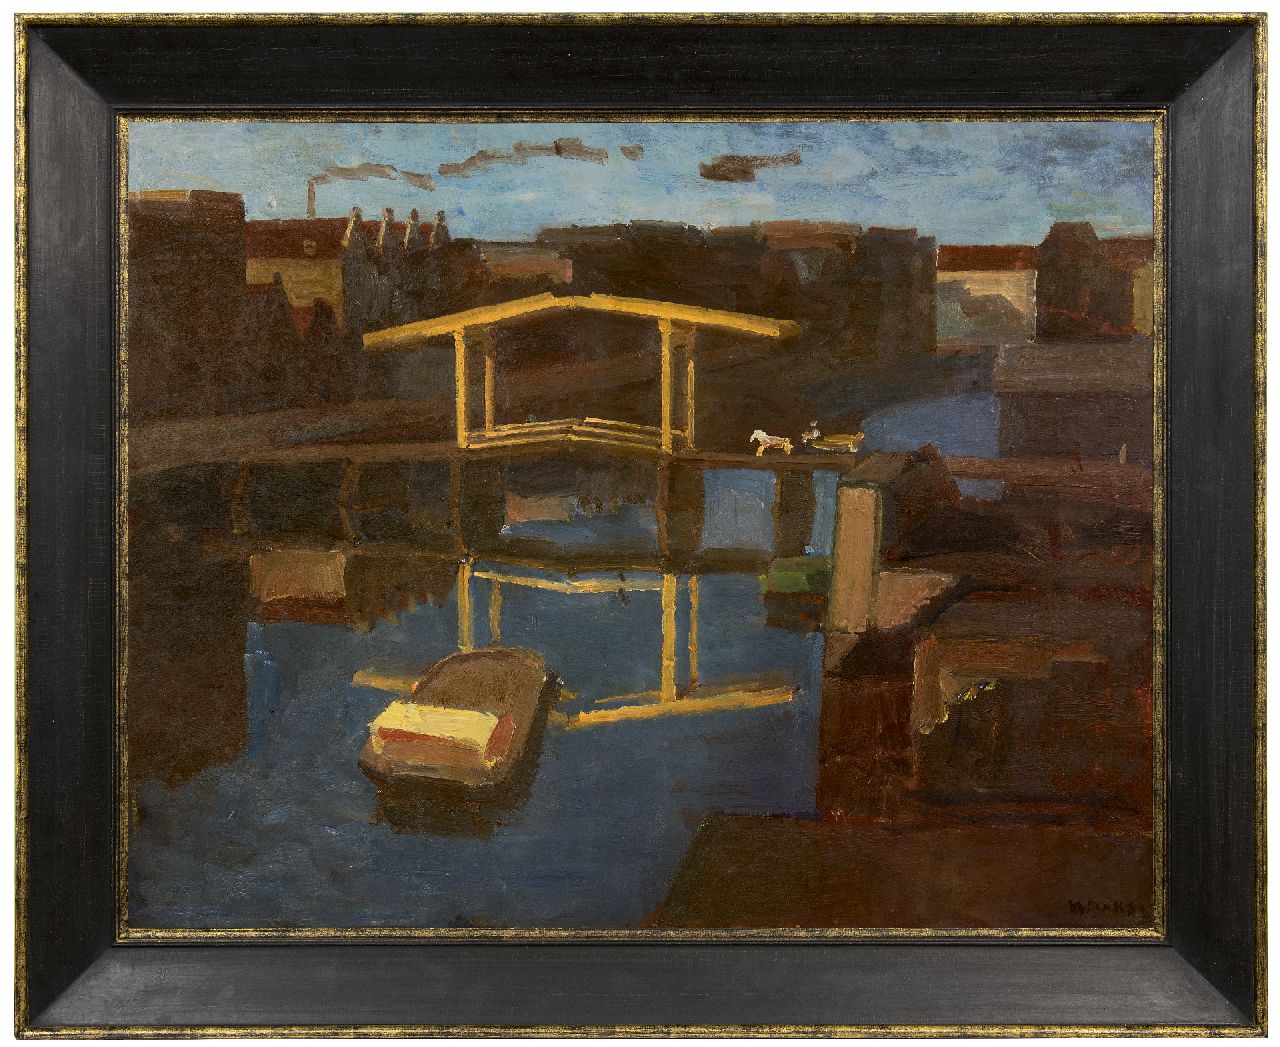 Maks C.J.  | Cornelis Johannes 'Kees' Maks | Schilderijen te koop aangeboden | De ophaalbrug (uitzicht uit het atelier van de schilder op het Prinseneiland, Amsterdam), olieverf op doek 79,4 x 100,0 cm, gesigneerd rechtsonder